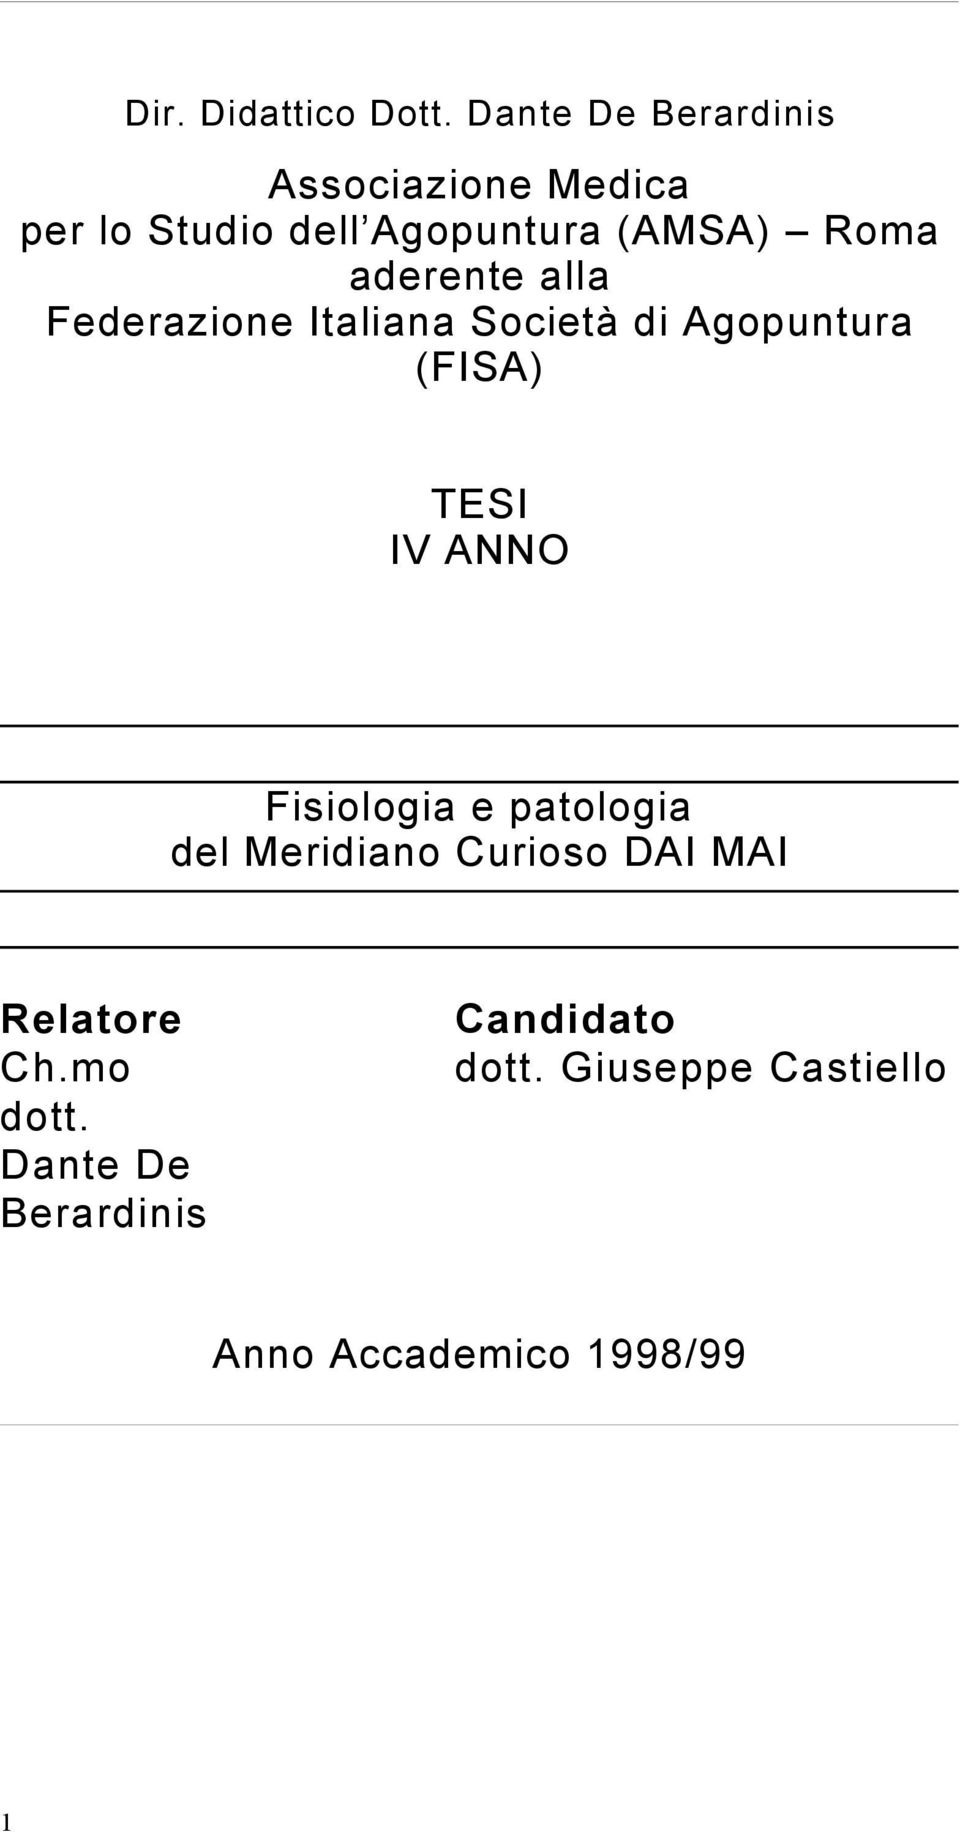 aderente alla Federazione Italiana Società di Agopuntura (FISA) TESI IV ANNO